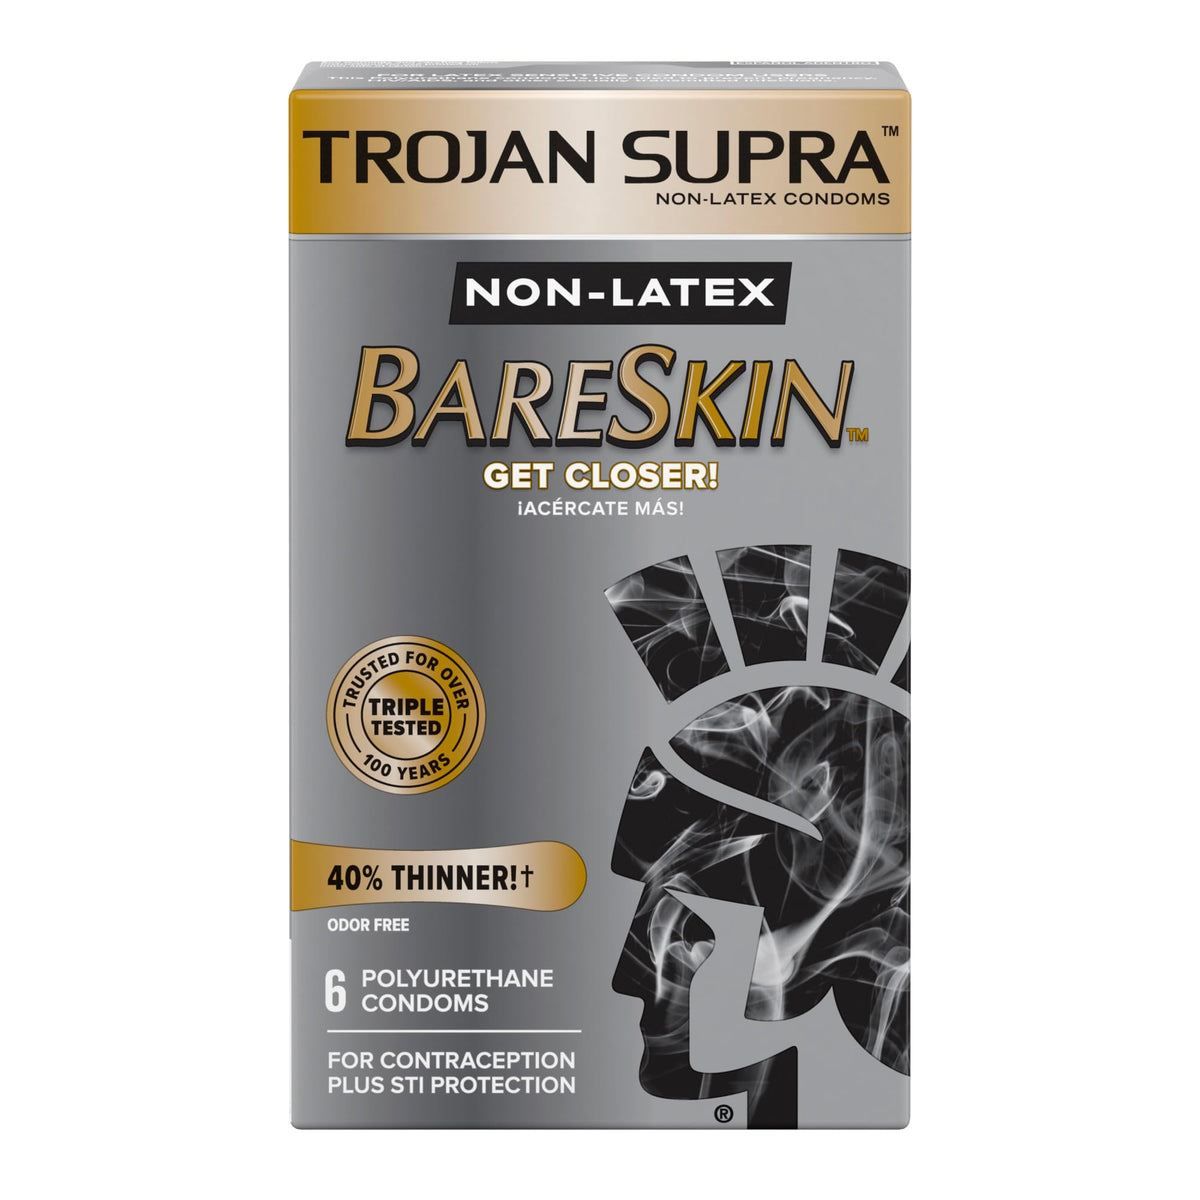 Trojan Supra BareSkin NON LATEX paquete de 6